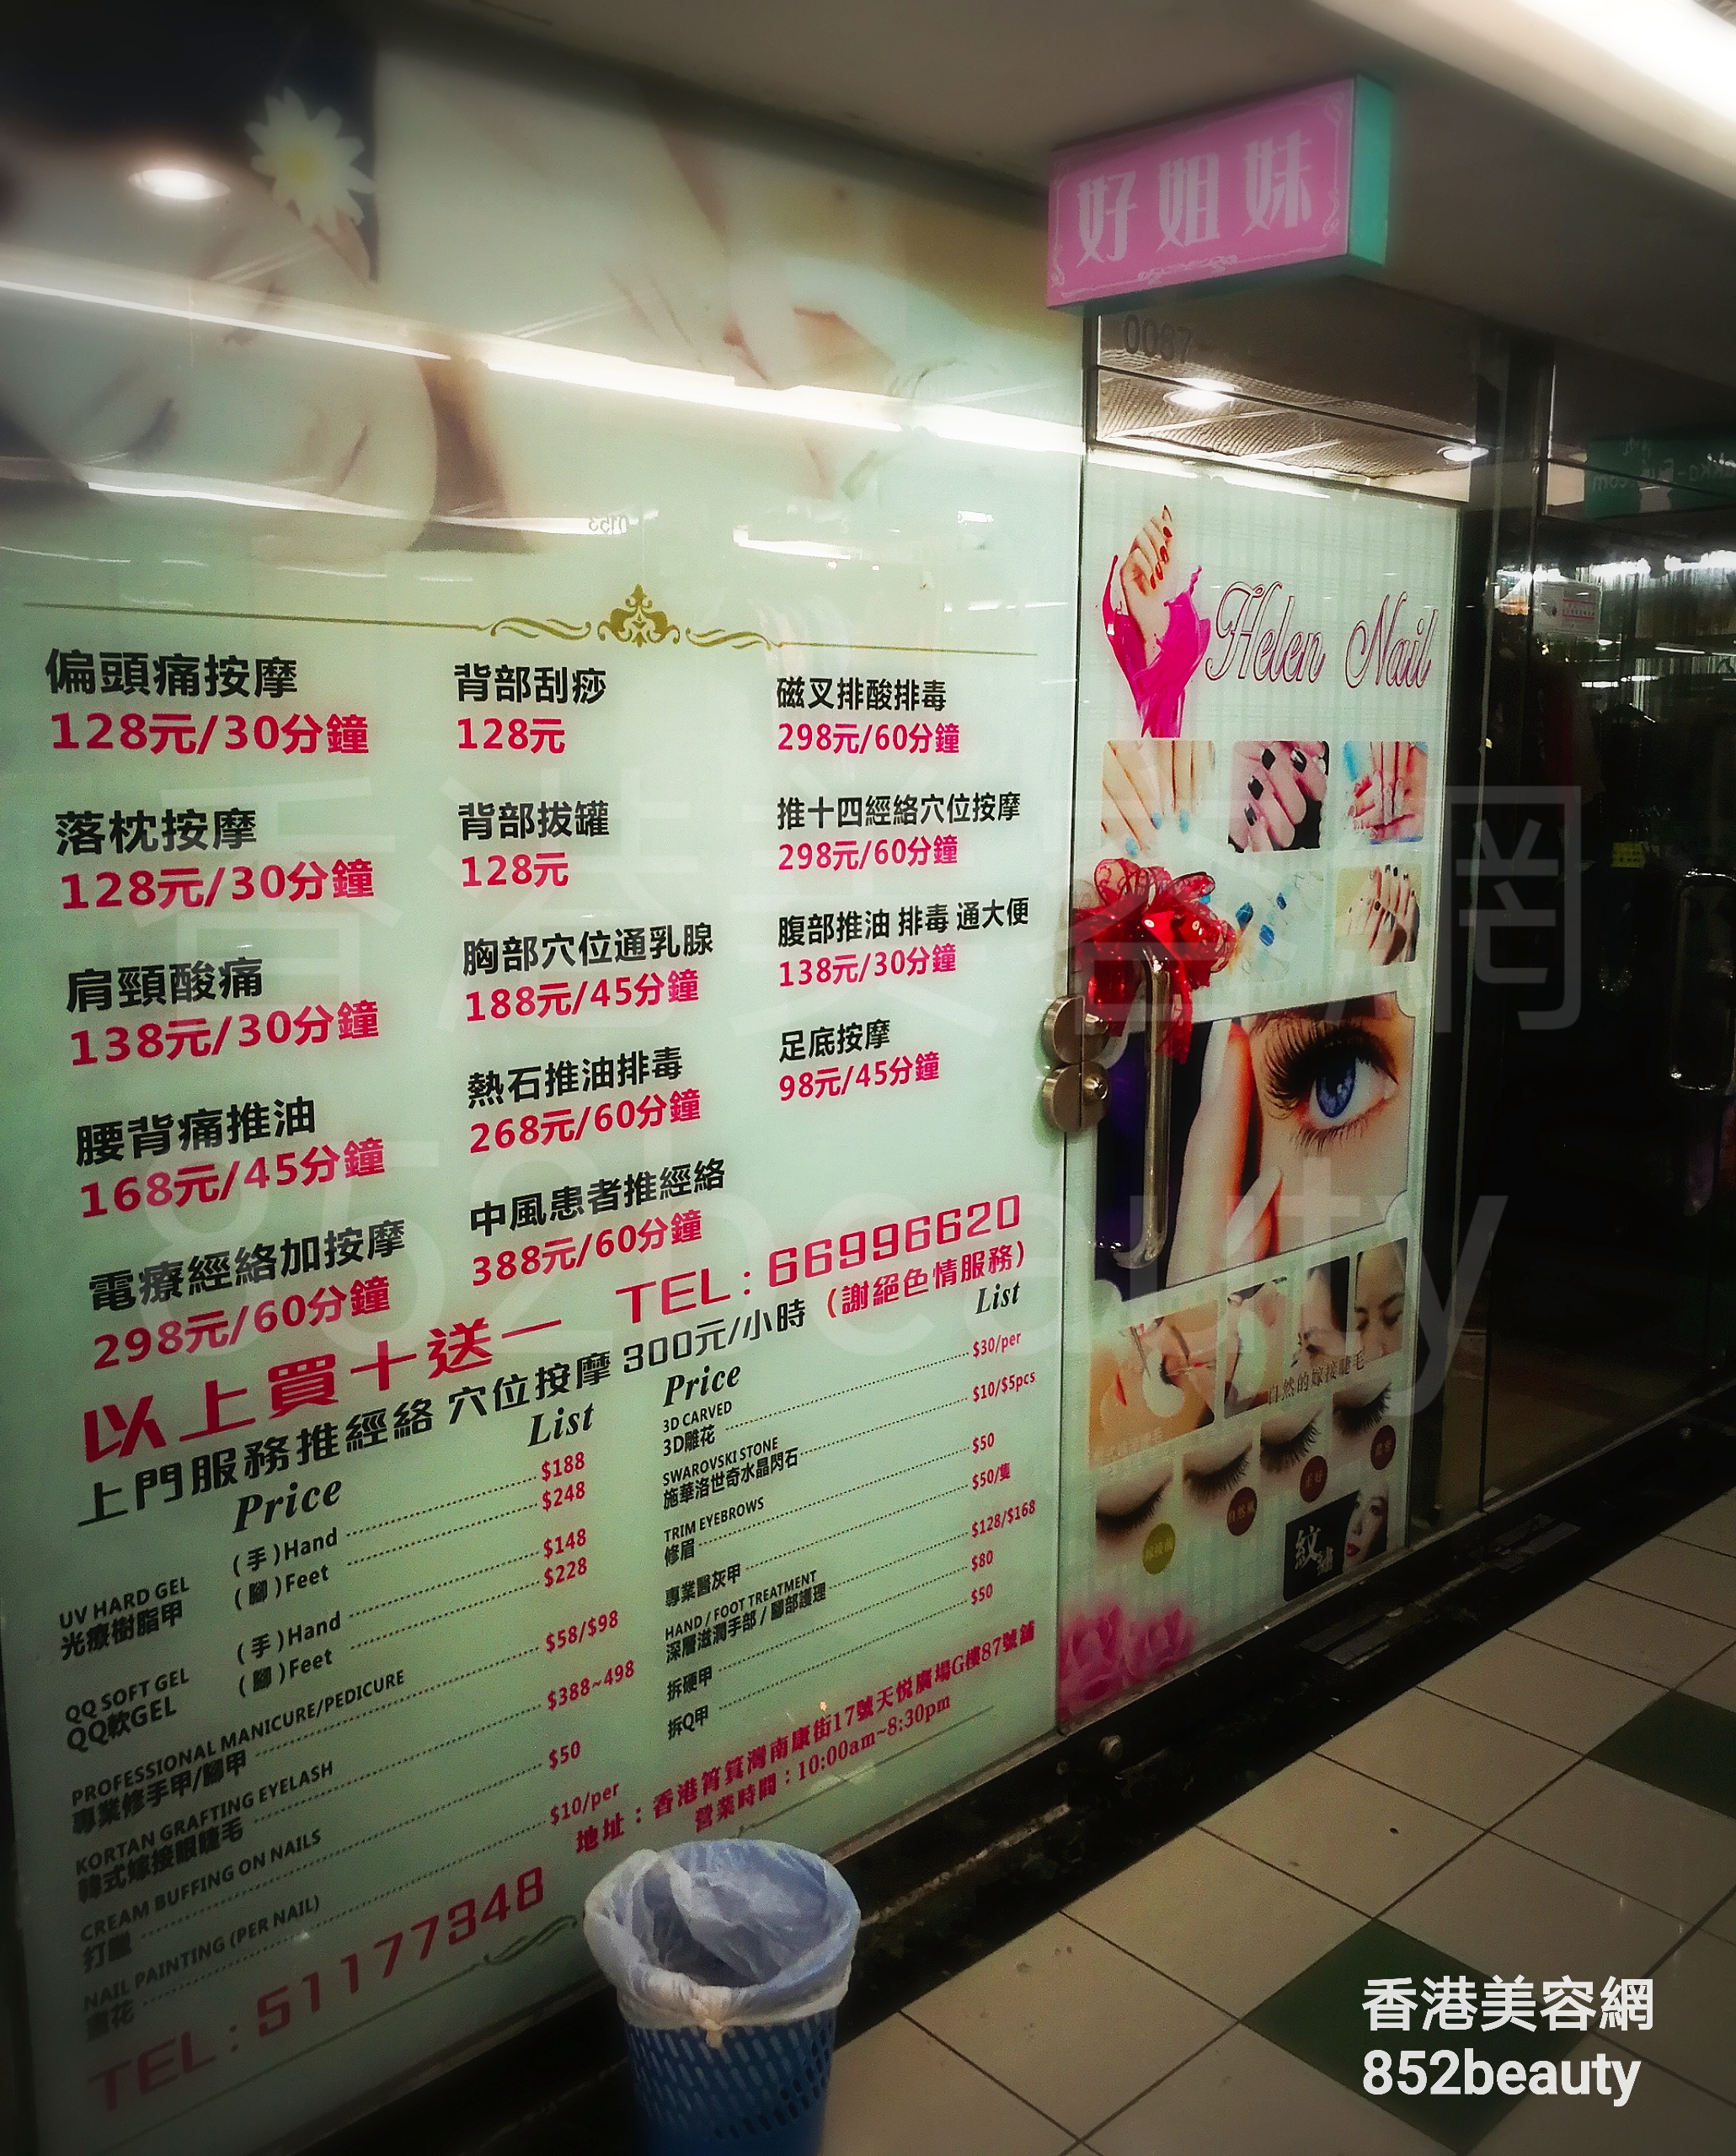 香港美容網 Hong Kong Beauty Salon 美容院 / 美容師: 好姐妹